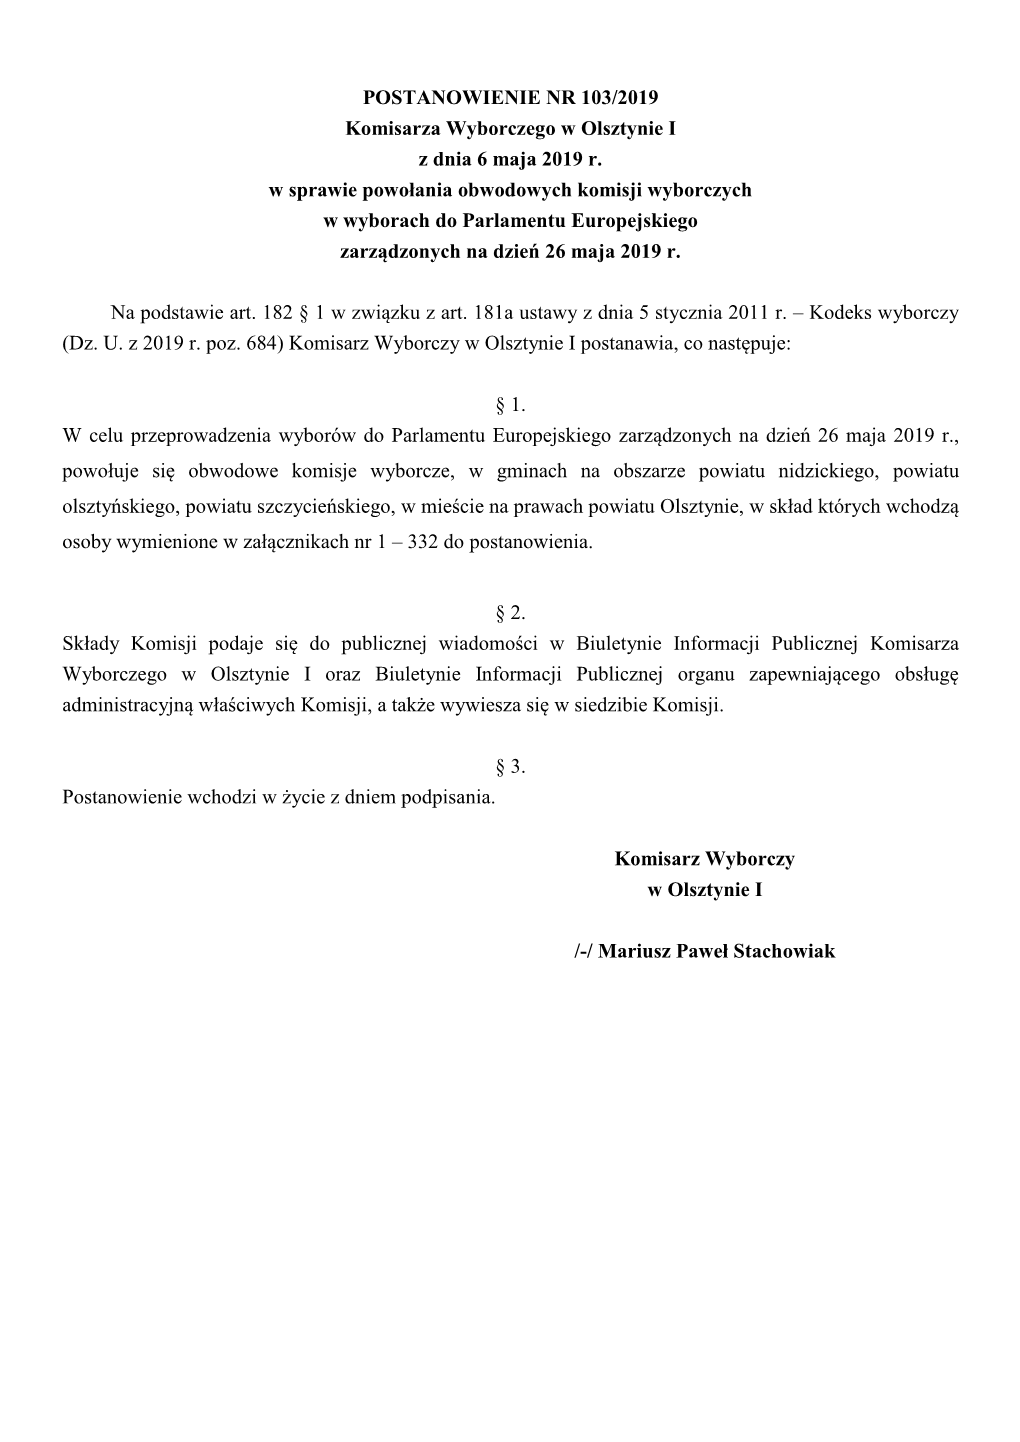 POSTANOWIENIE NR 103/2019 Komisarza Wyborczego W Olsztynie I Z Dnia 6 Maja 2019 R